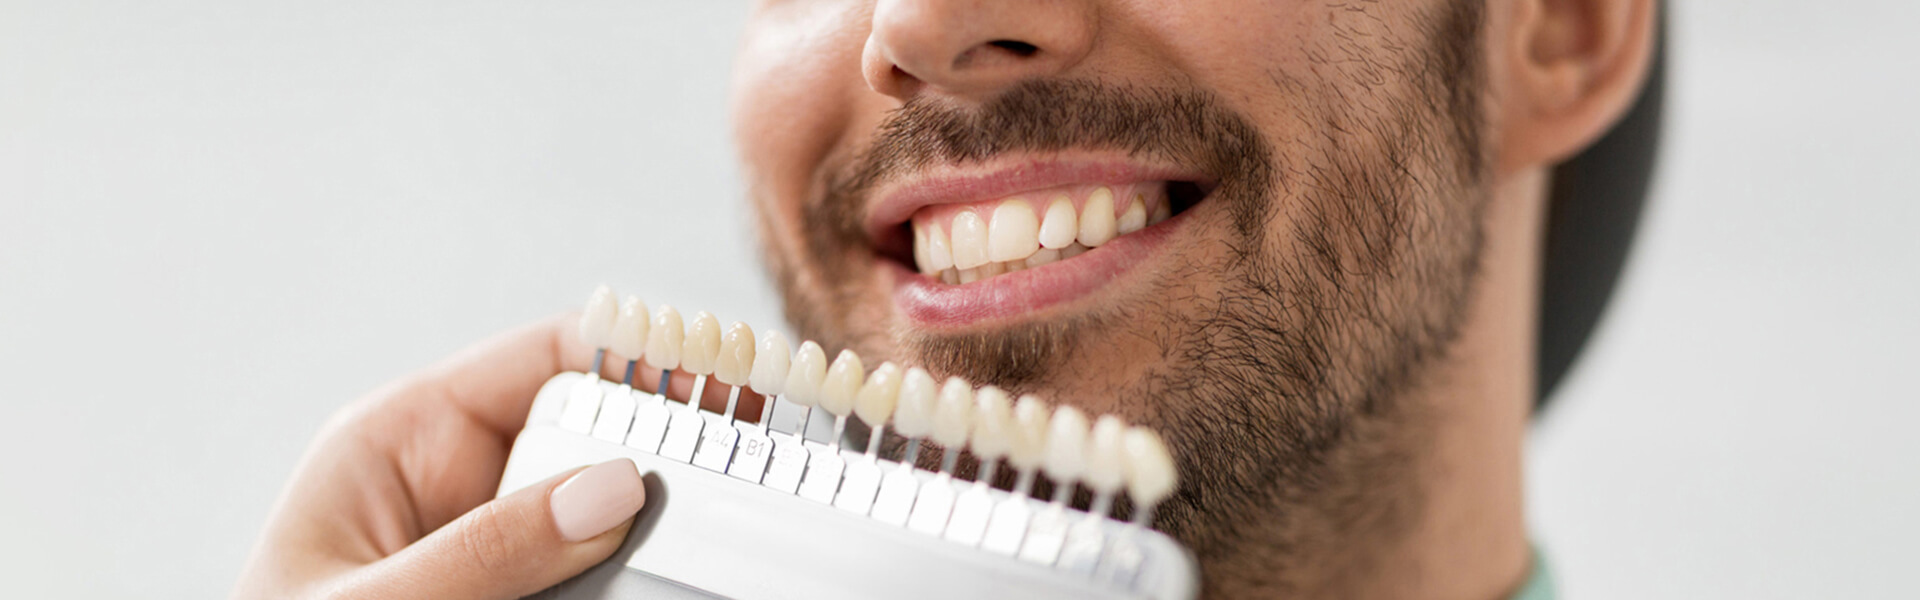 5 Advantages of Dental Veneers in Houston